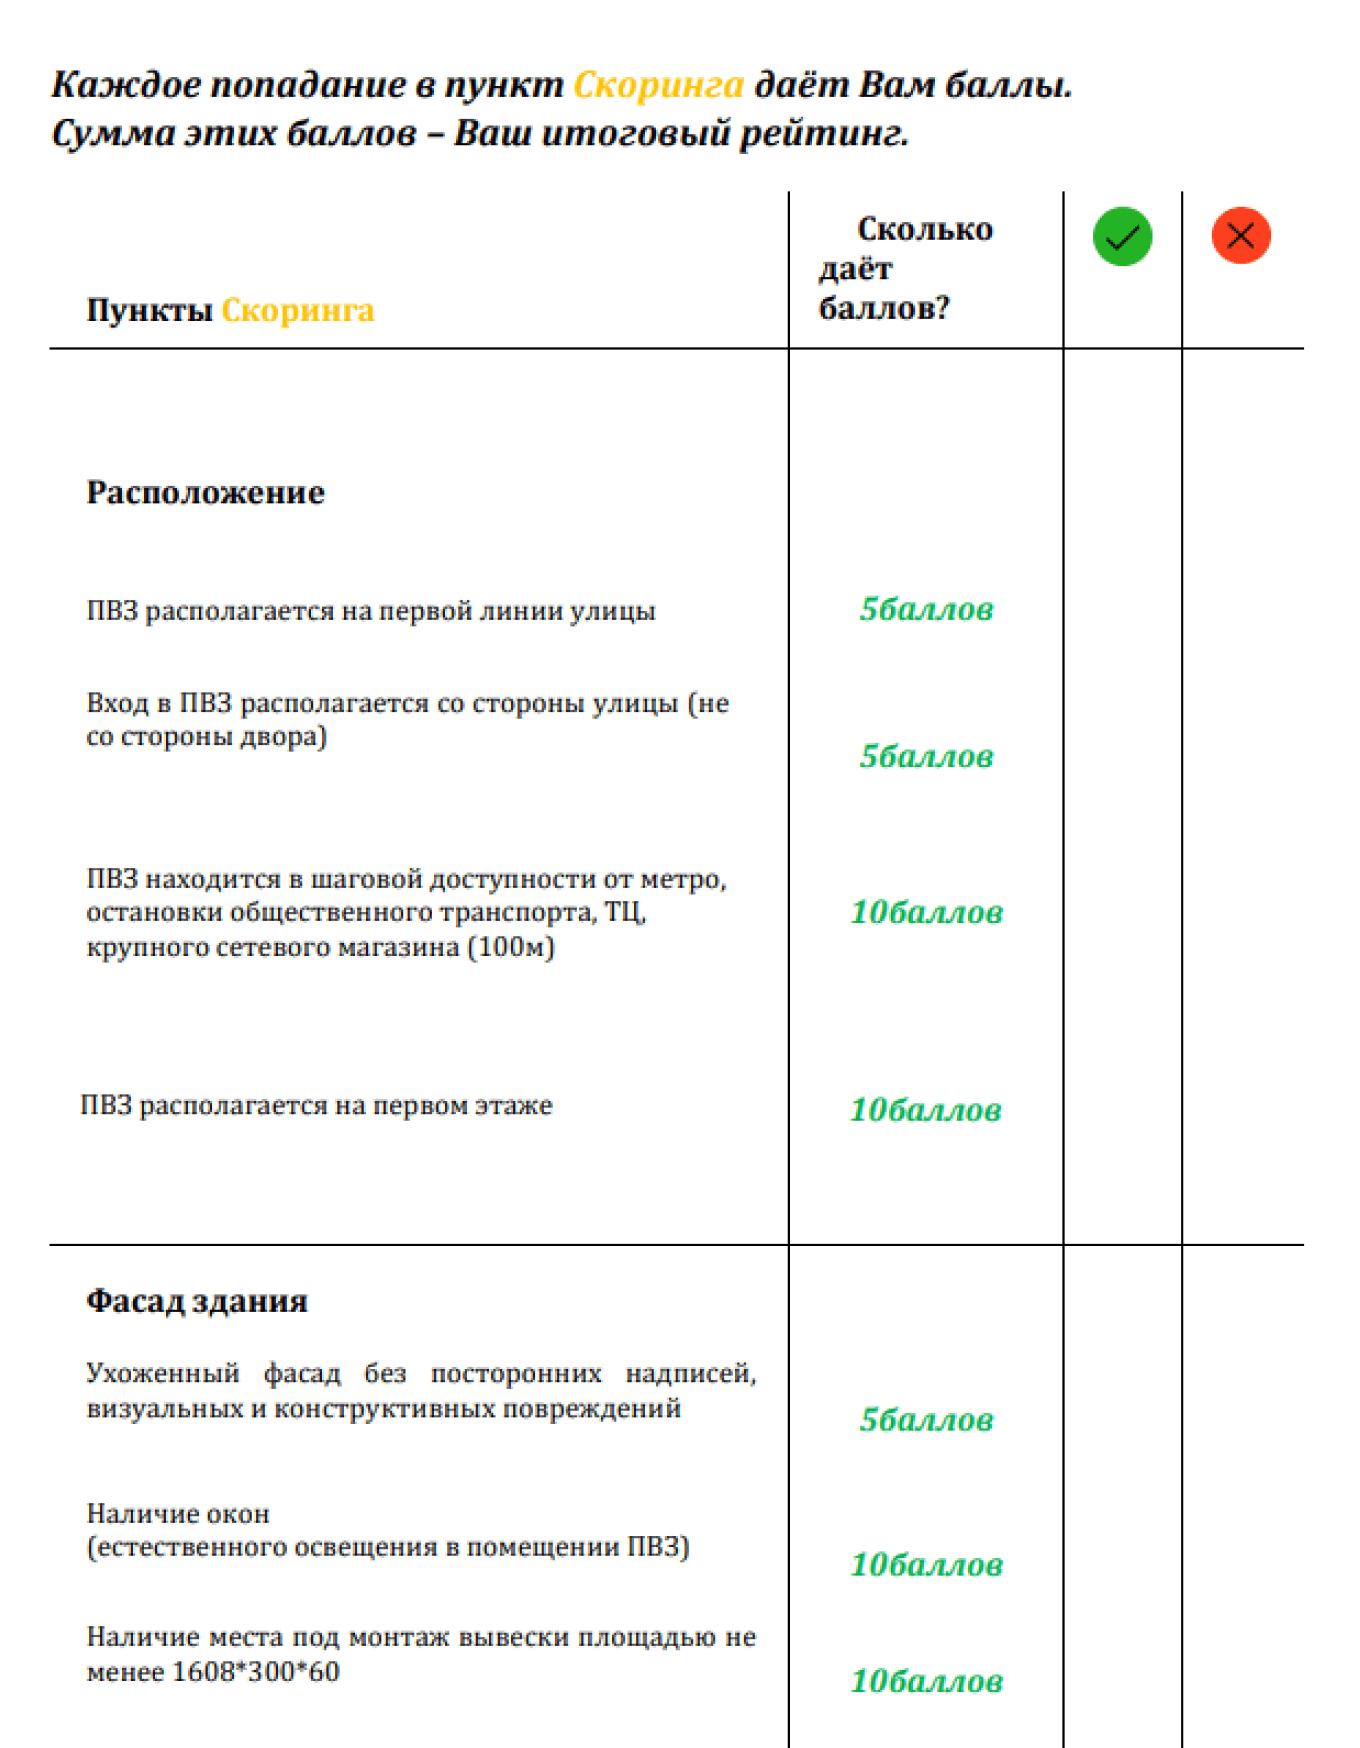 Система оценки помещения для ПВЗ Яндекса